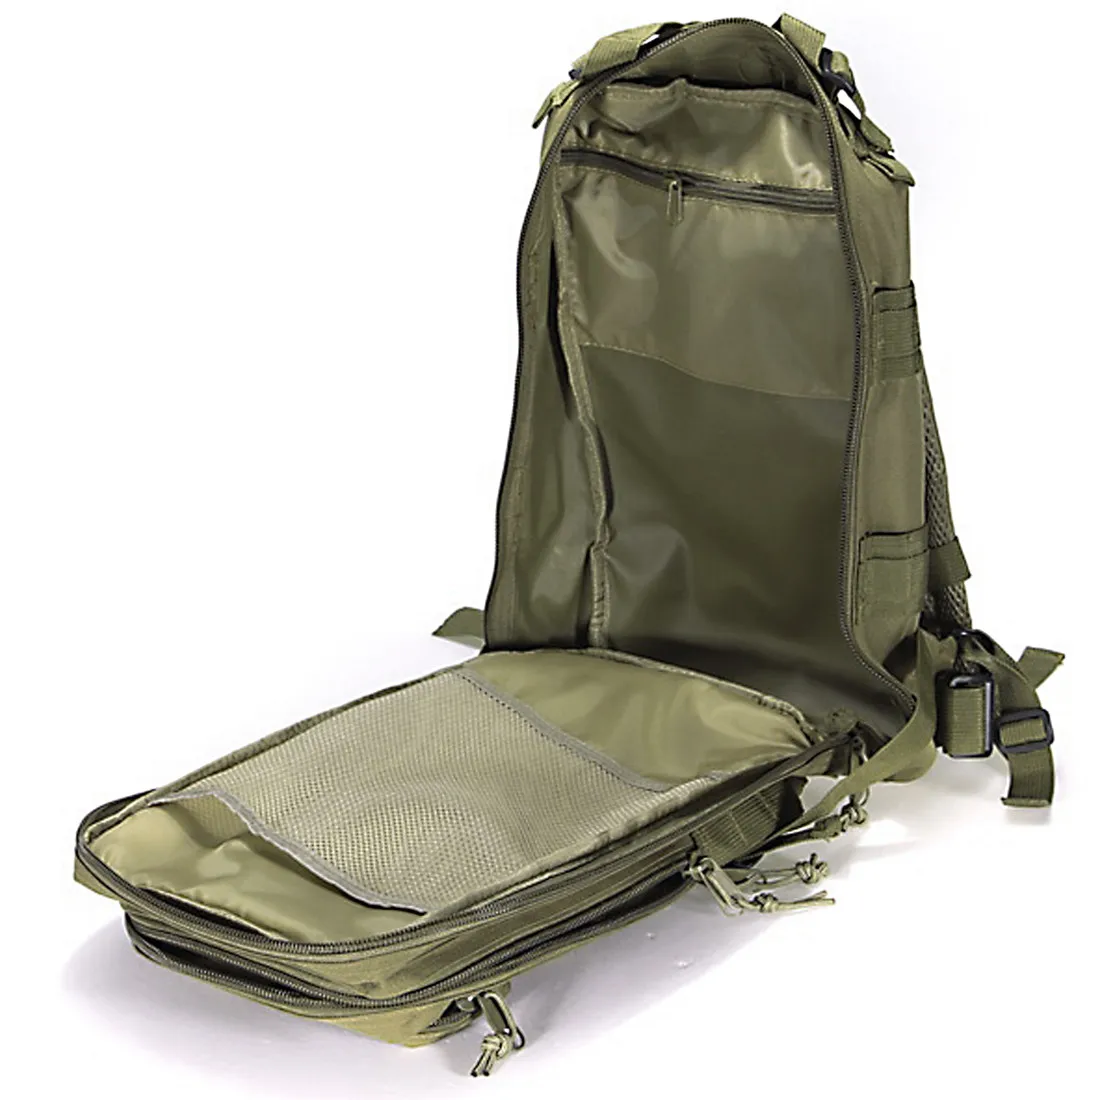 1000D нейлоновый тактический военный рюкзак, водонепроницаемая армейская сумка, уличный спортивный рюкзак для кемпинга, туризма, рыбалки, охоты, 30L сумка